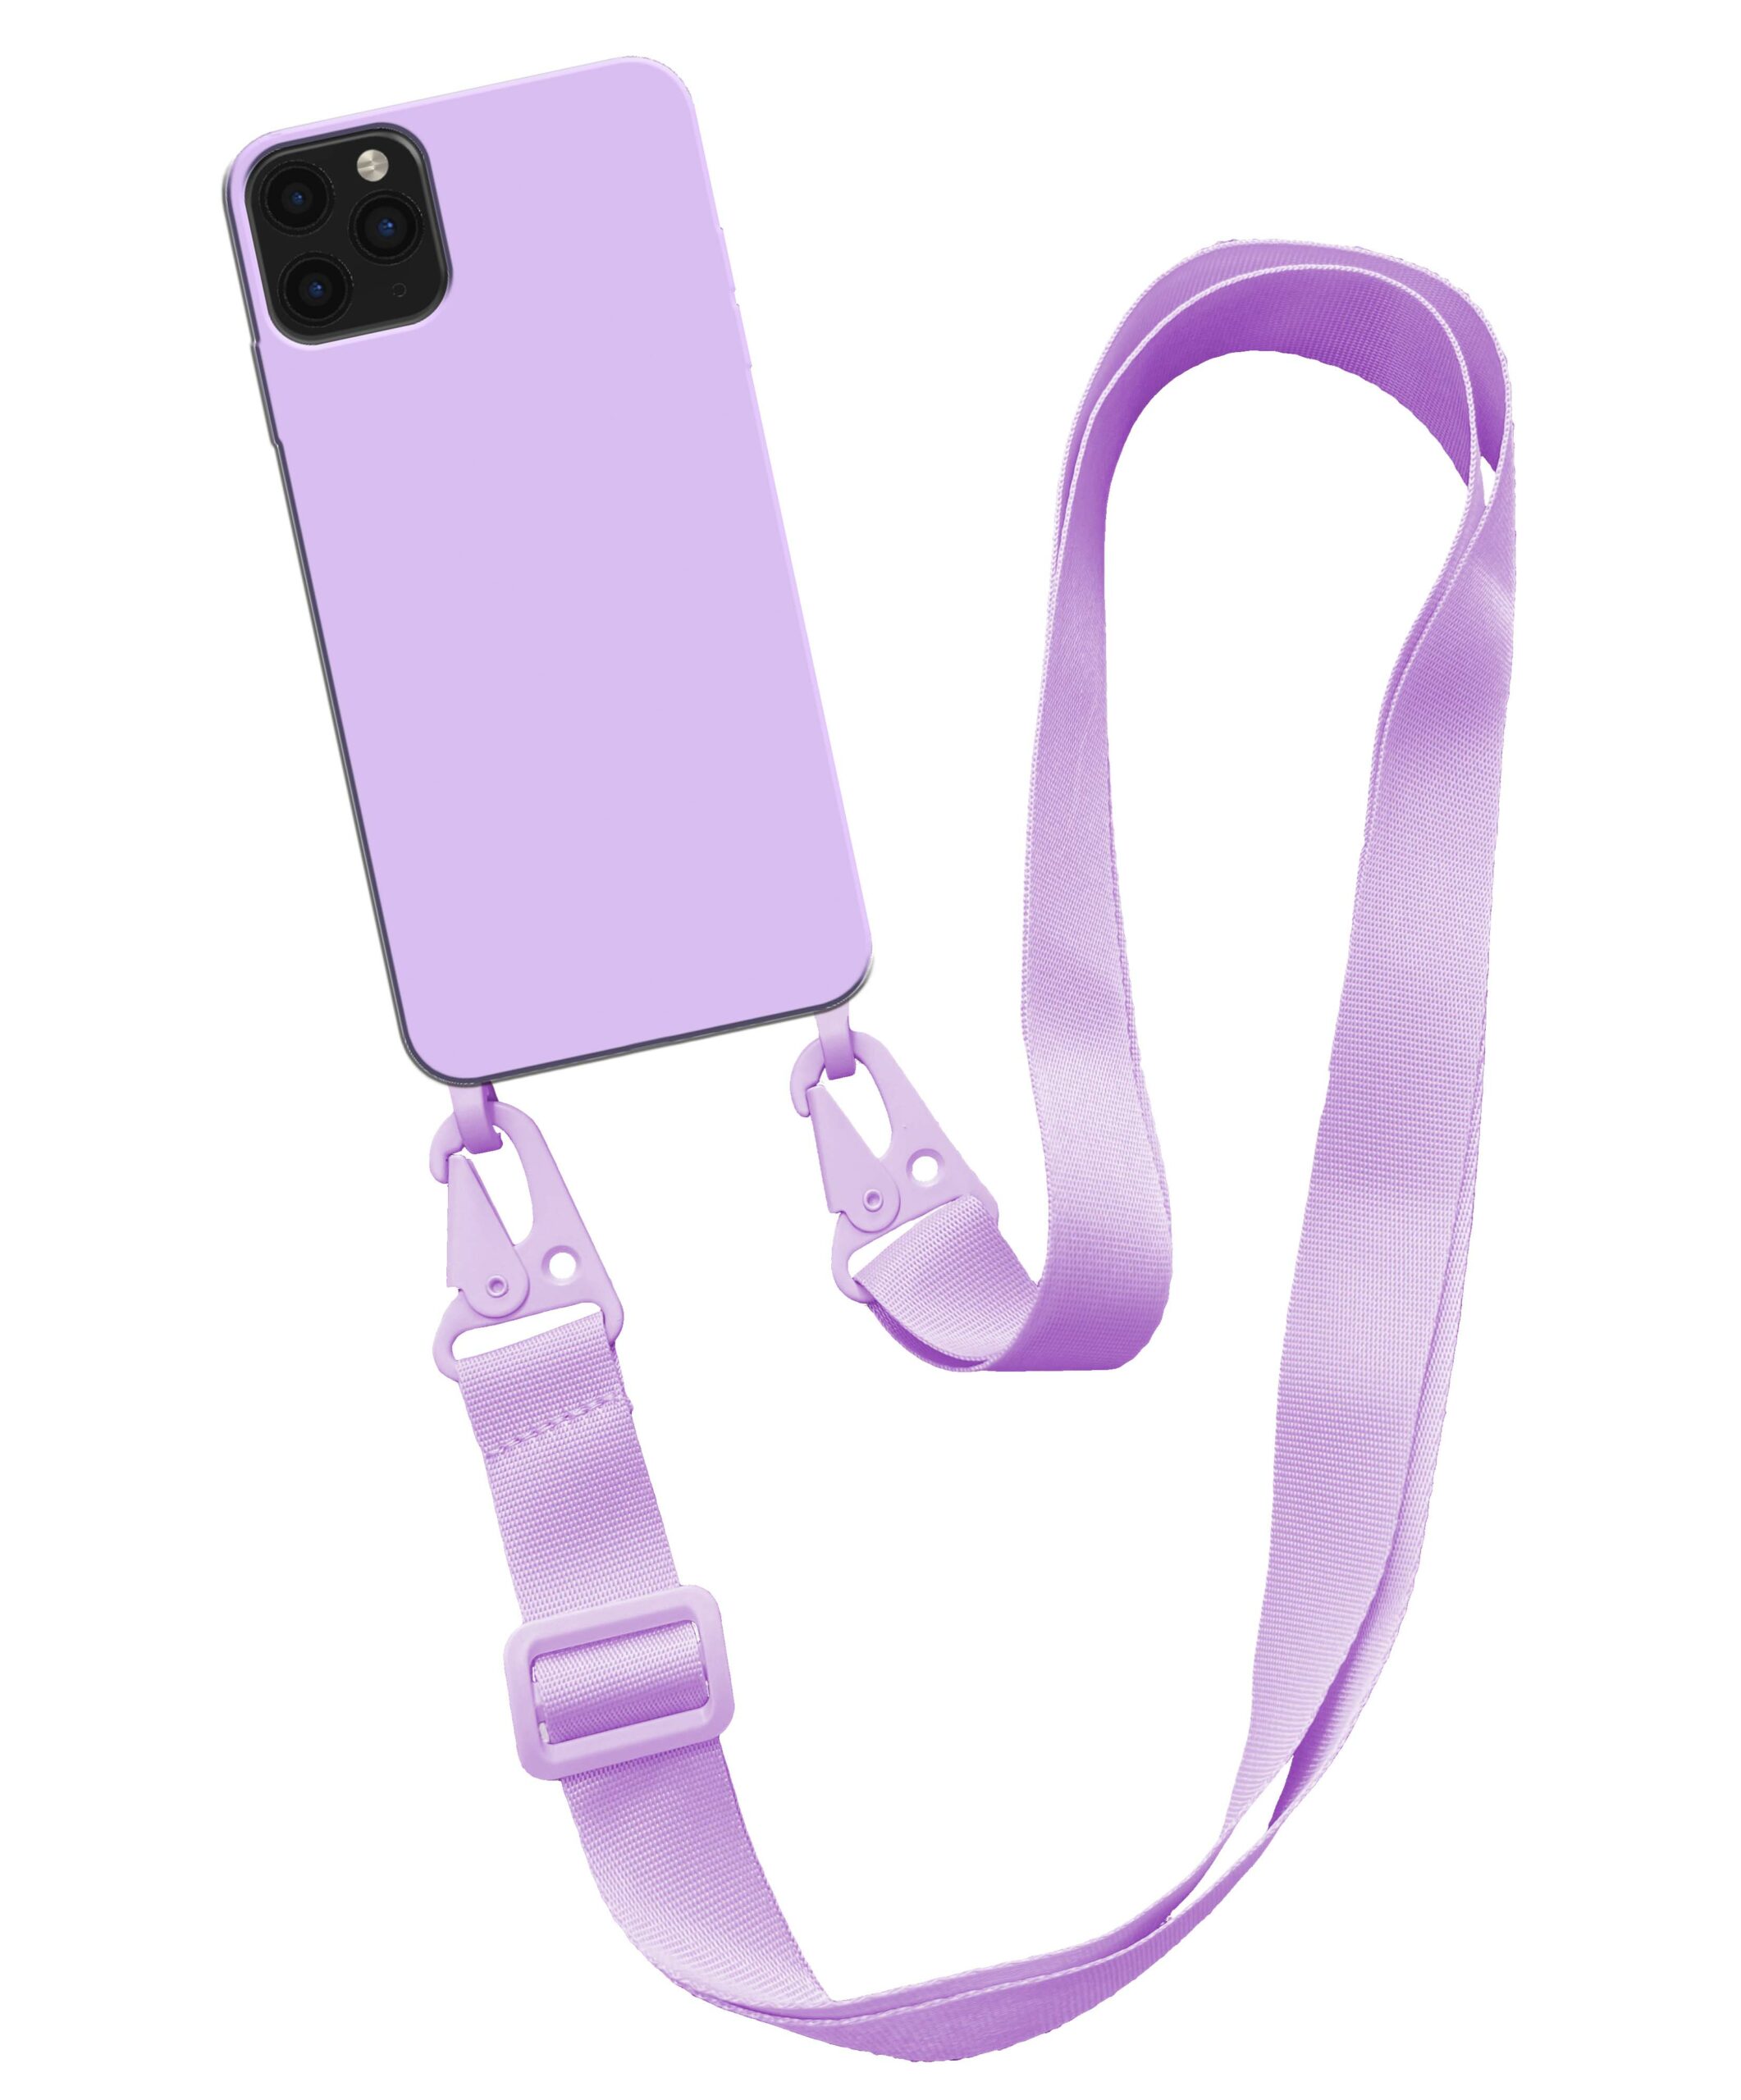 iPhone 11 Pro Max hoesje met breed koord paars